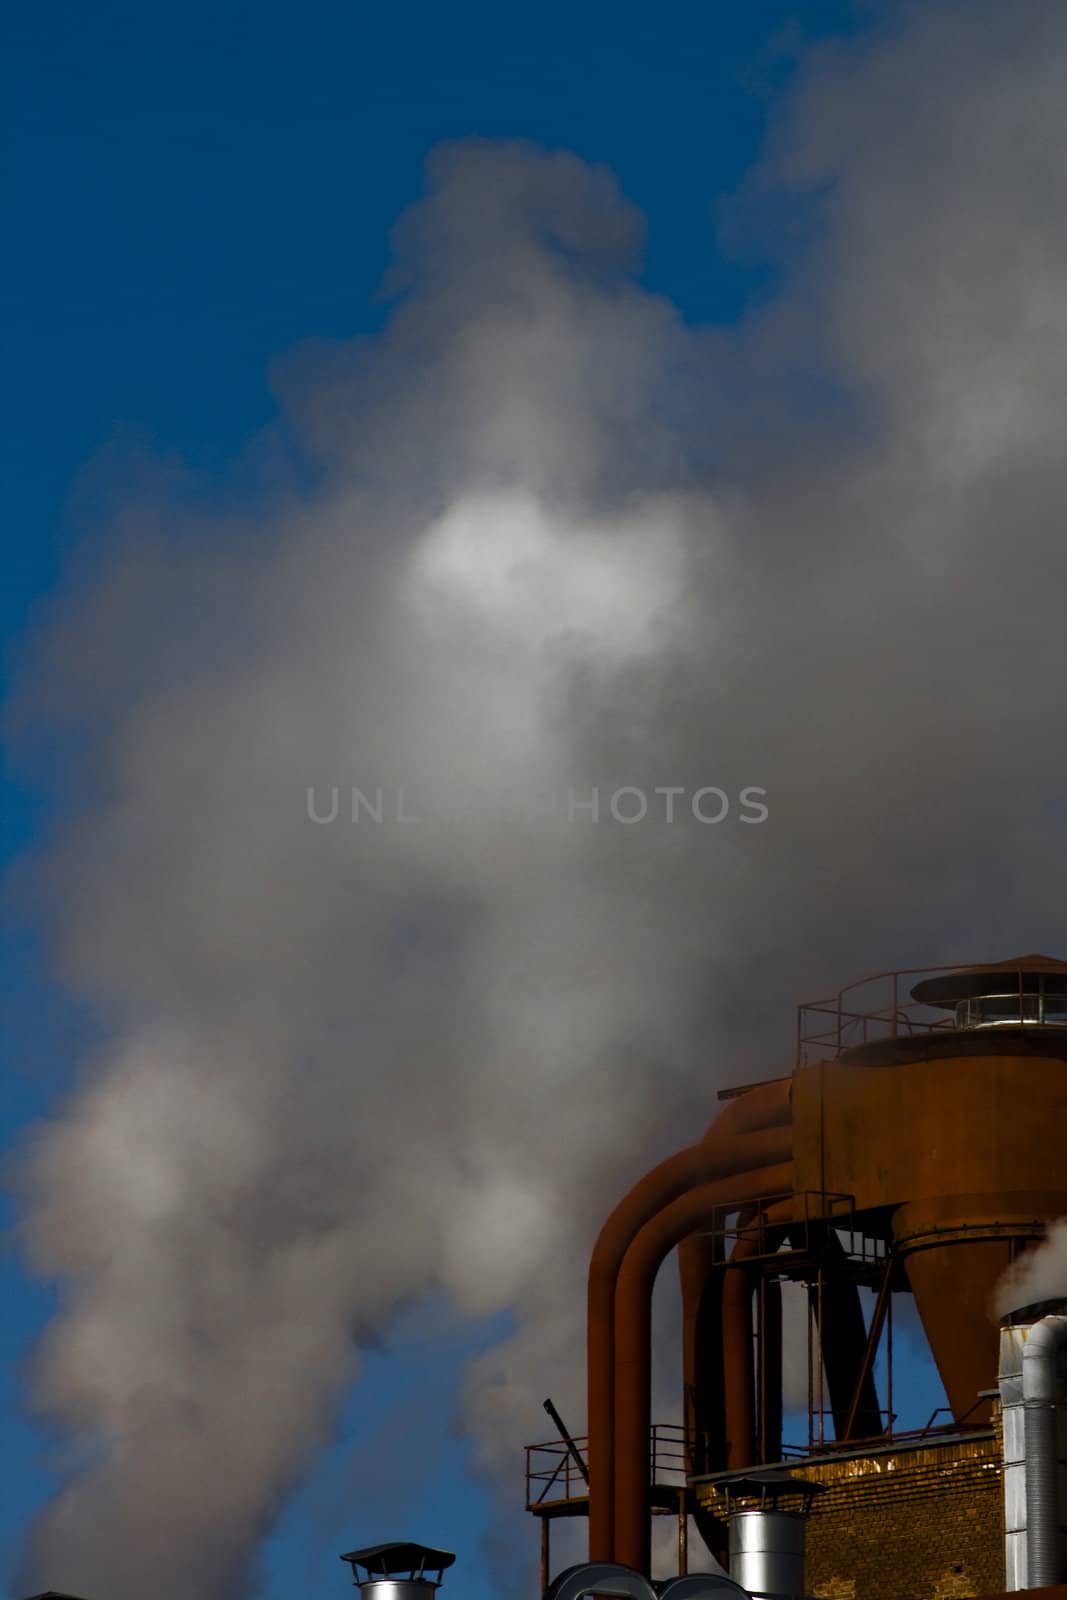 fabrike smoke with blue sky as background